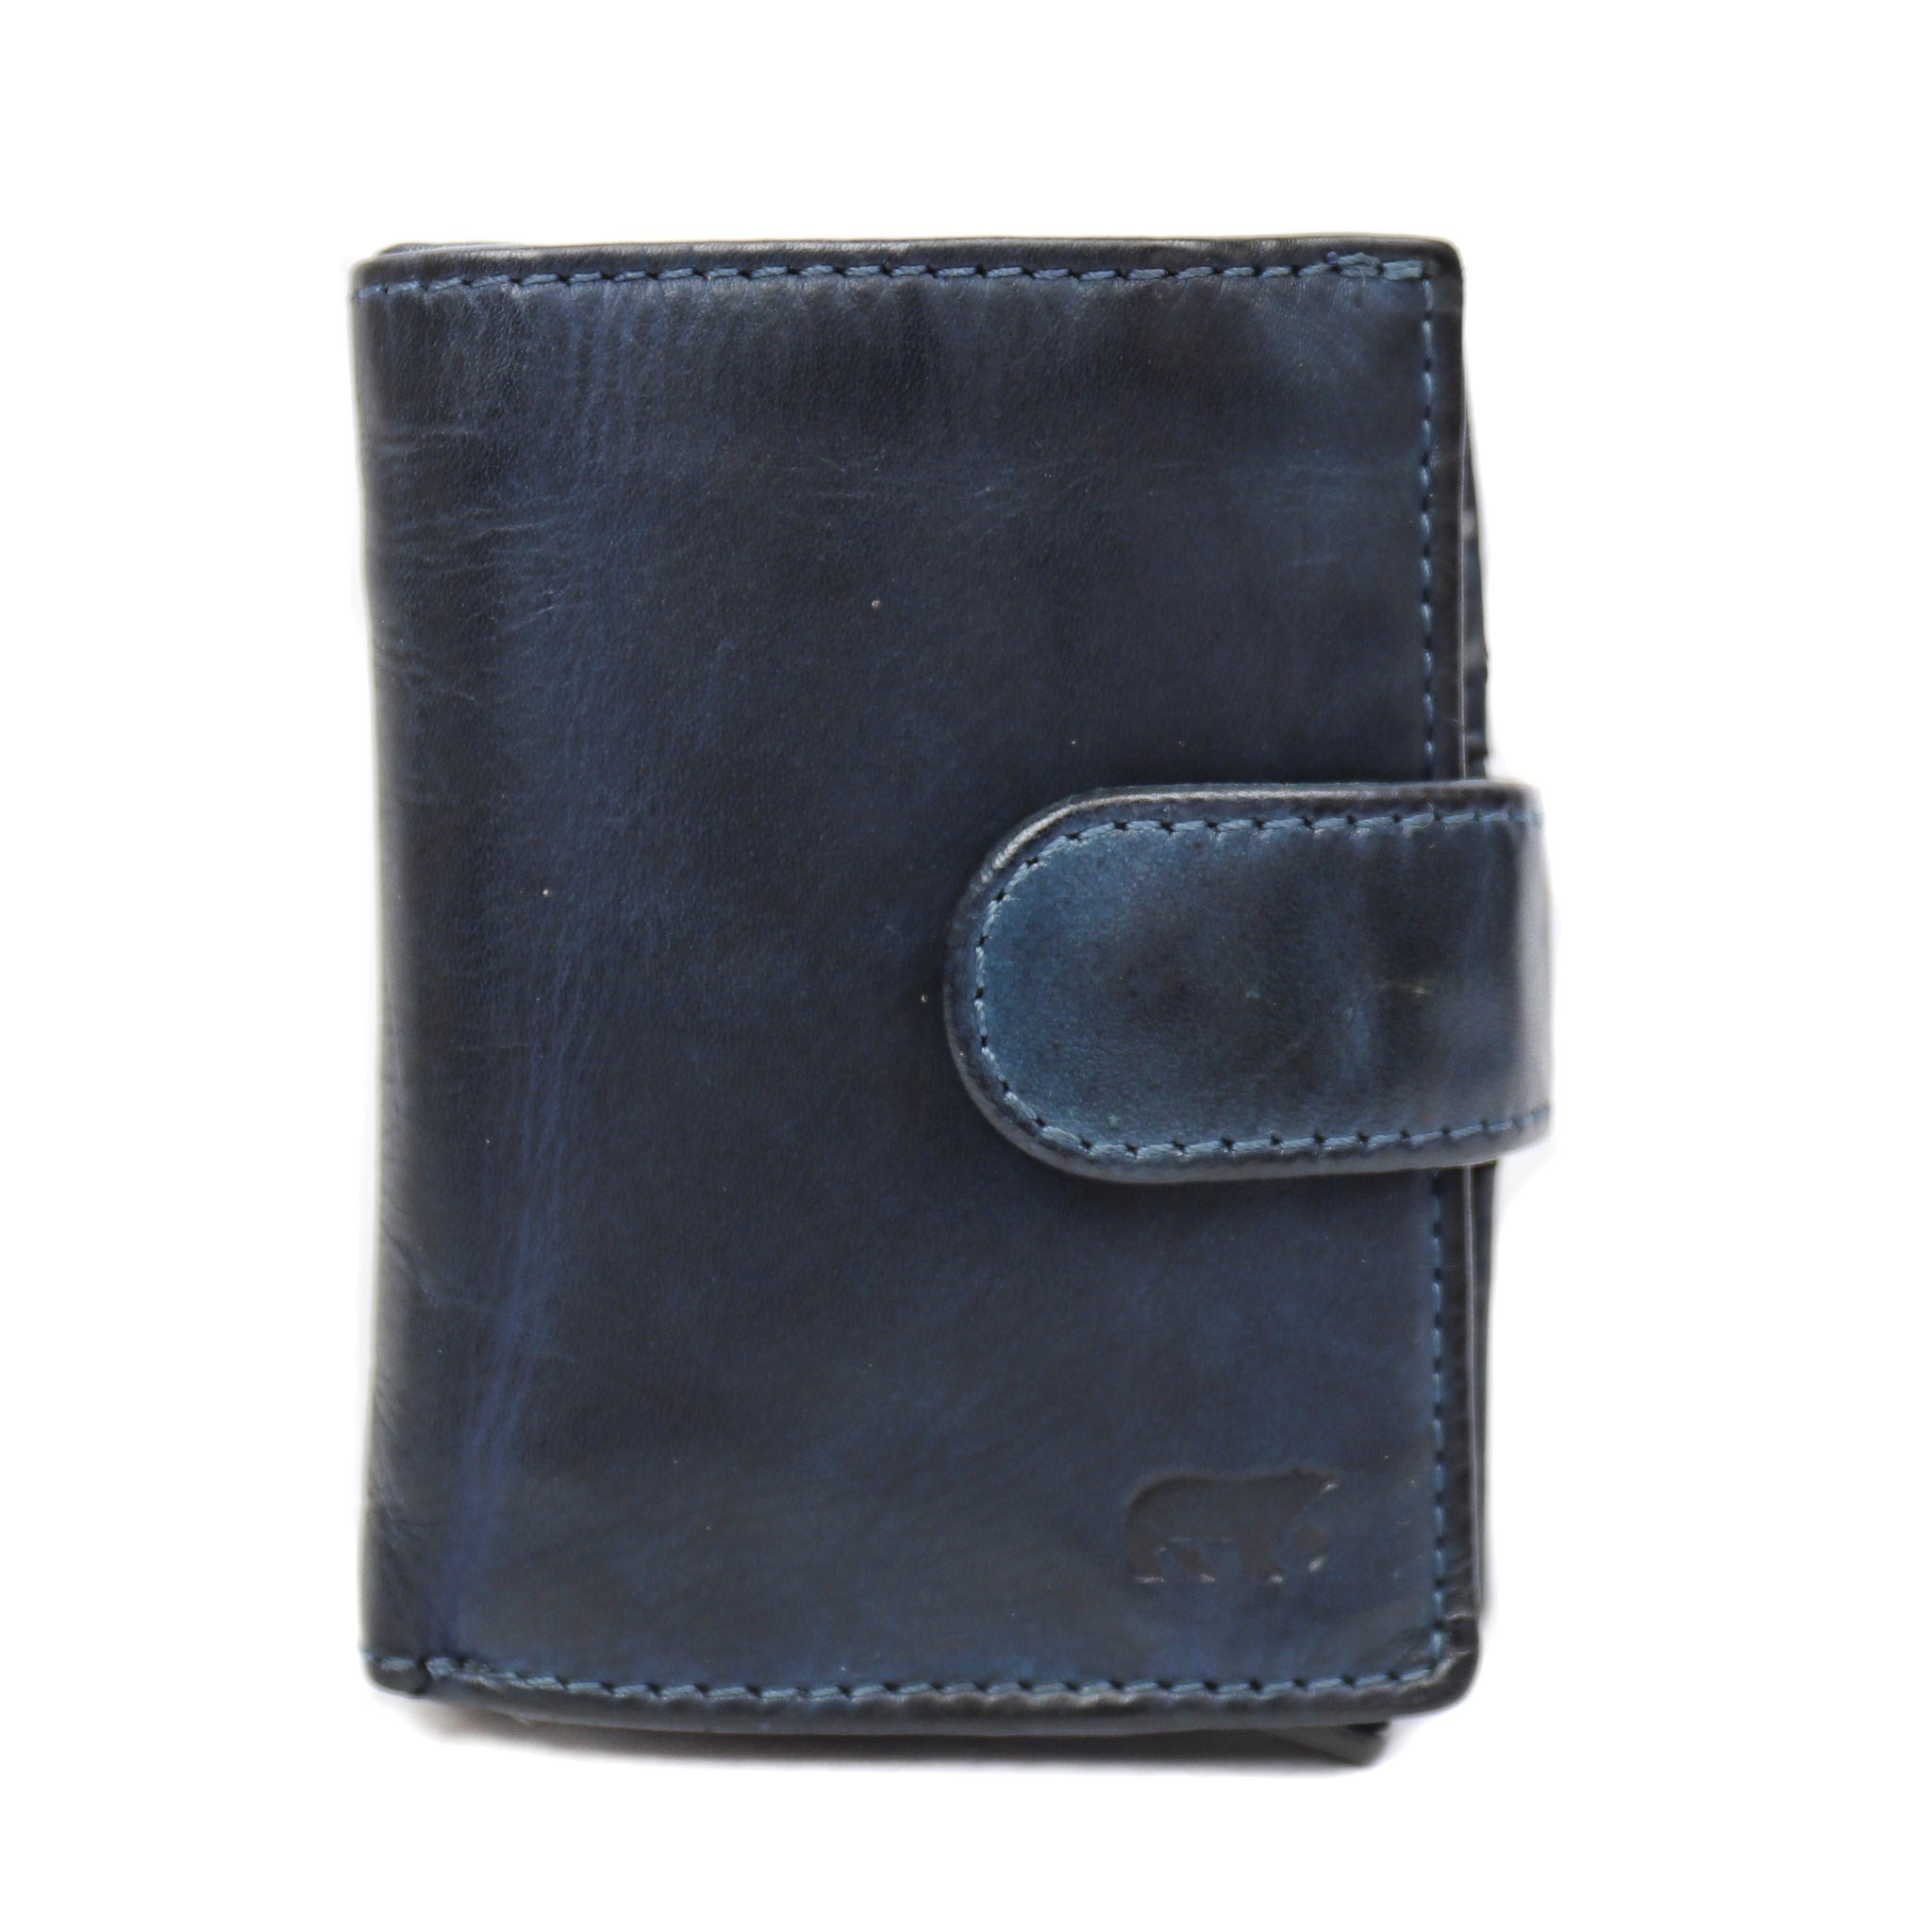 Card holder 'Kris' dark blue - CL 15253